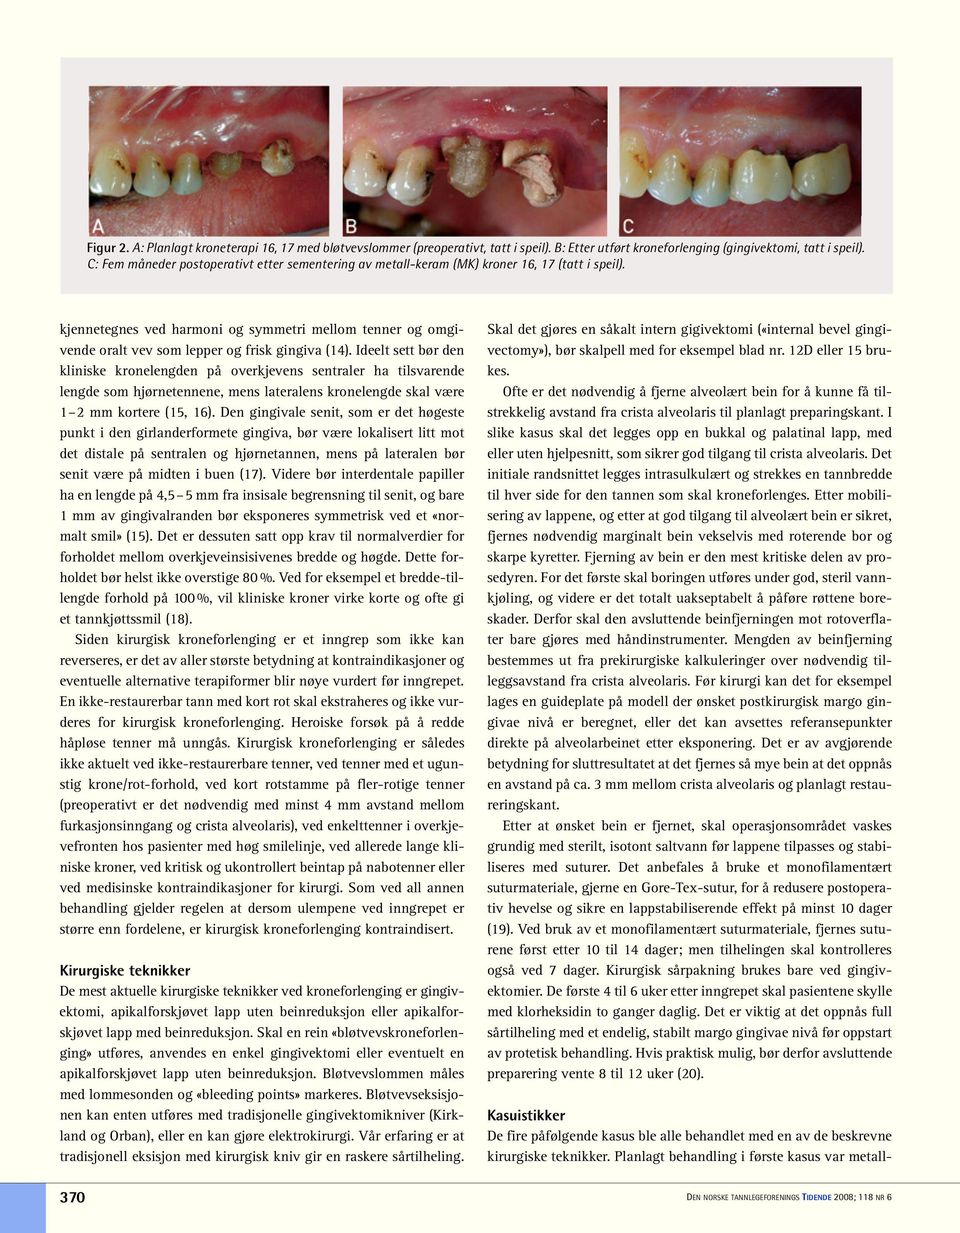 kjennetegnes ved harmoni og symmetri mellom tenner og omgivende oralt vev som lepper og frisk gingiva (14).